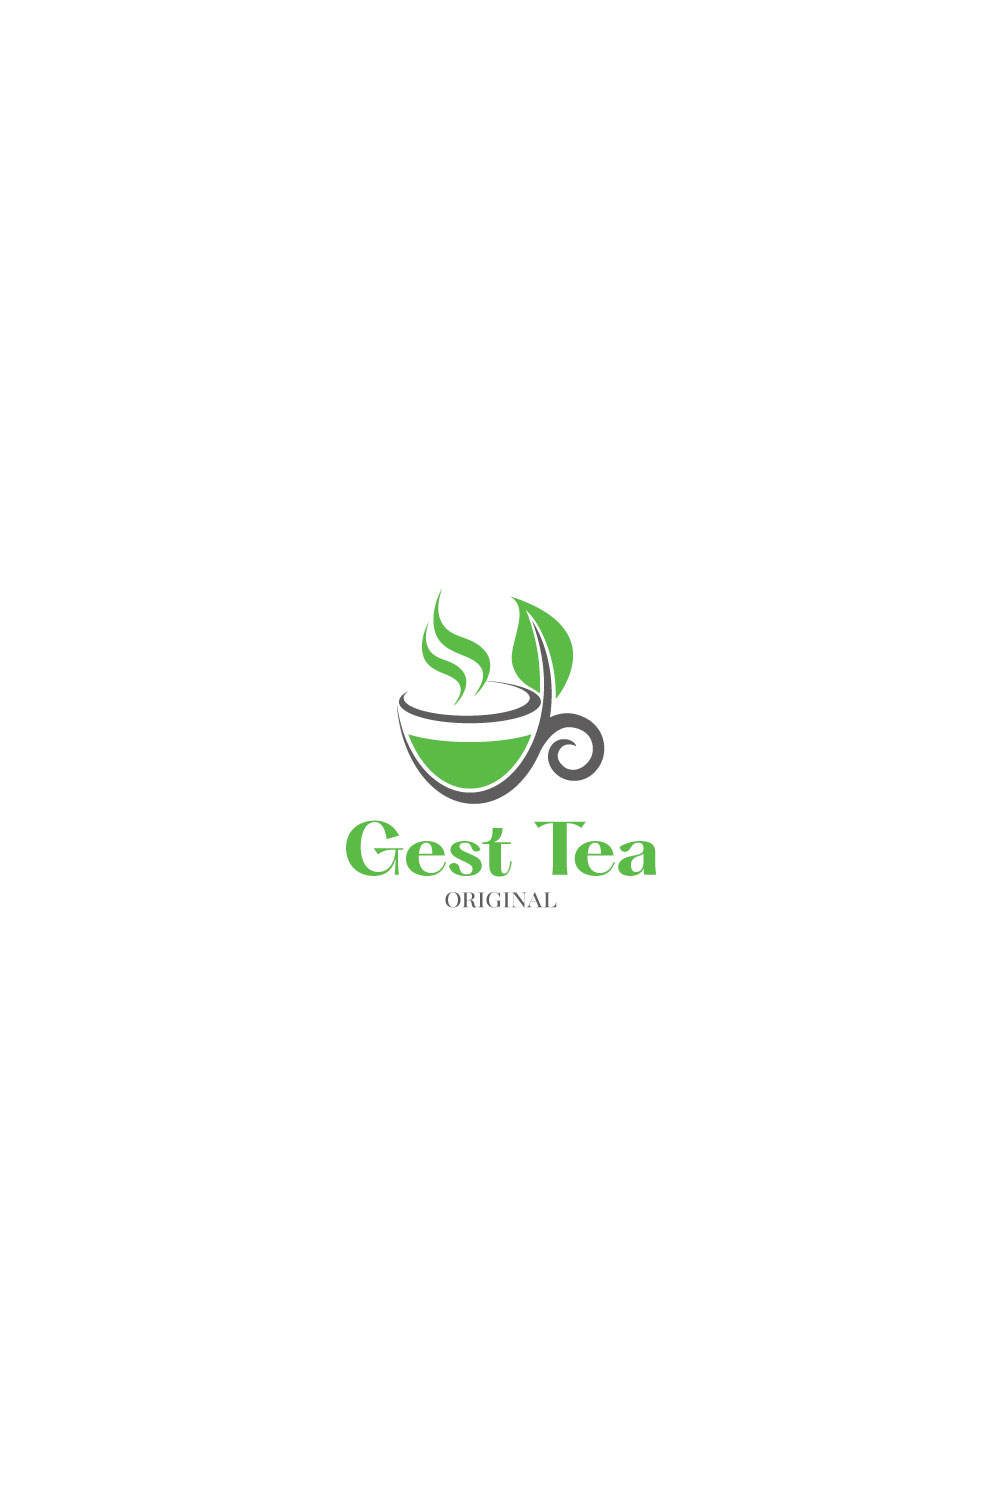 gest tea logo pint 706